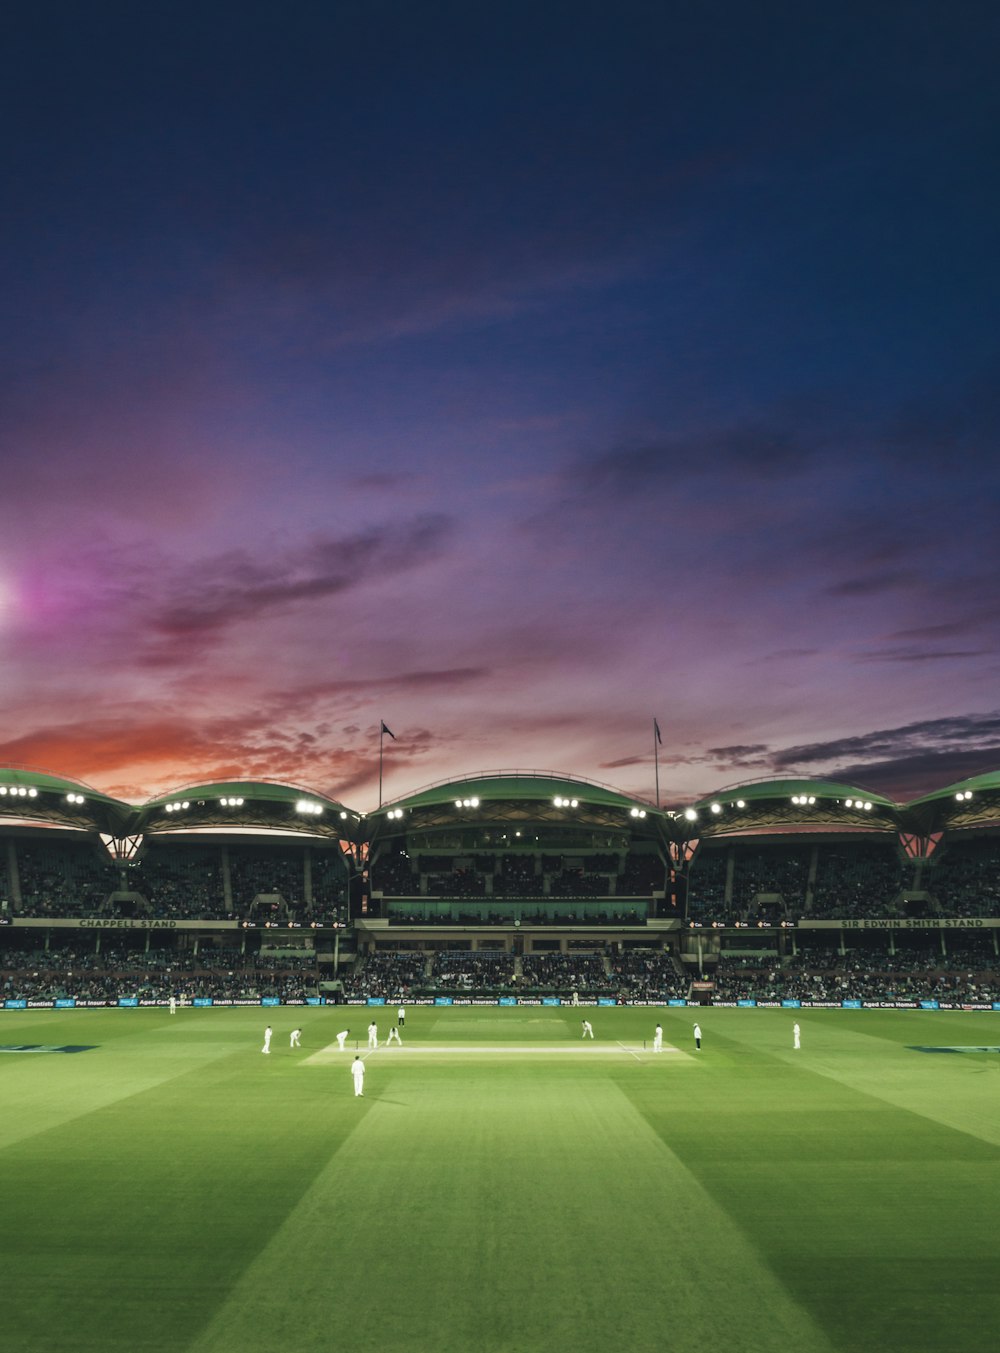 Gente viendo el juego de cricket durante la puesta del sol